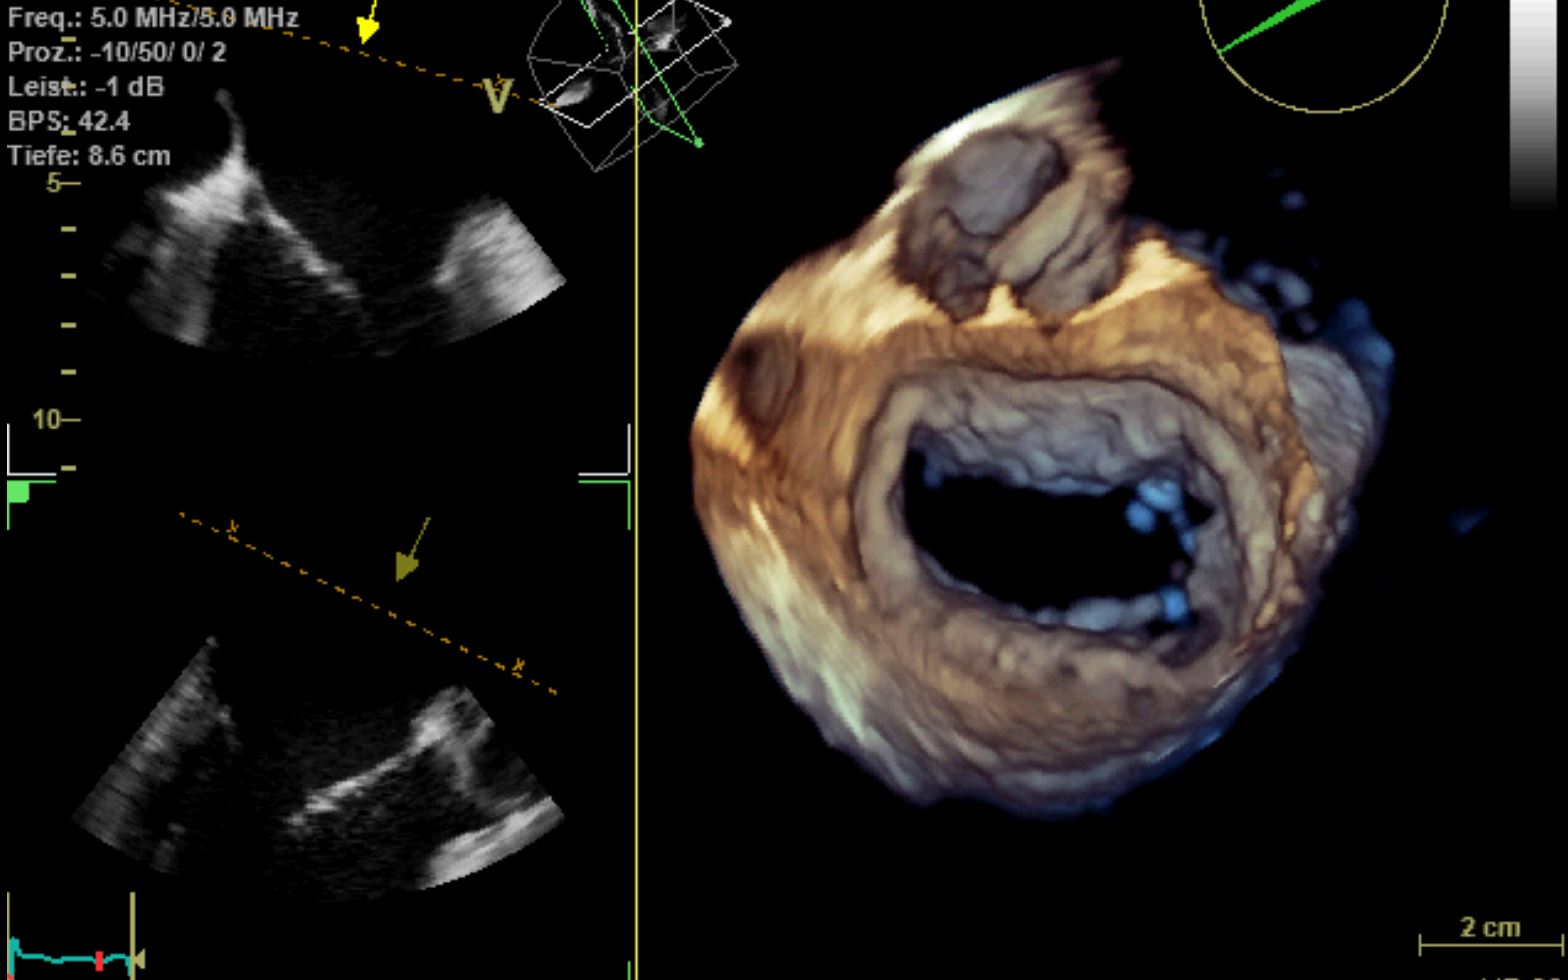 Dreidimensionale Schluckechokardiographie (transösophageale Echokardiographie, TEE)- räumliche Darstellung des Herzens in unterschiedlichen Schnittebenen und in der Aufsicht (hier Mitralklappe geöffnet)